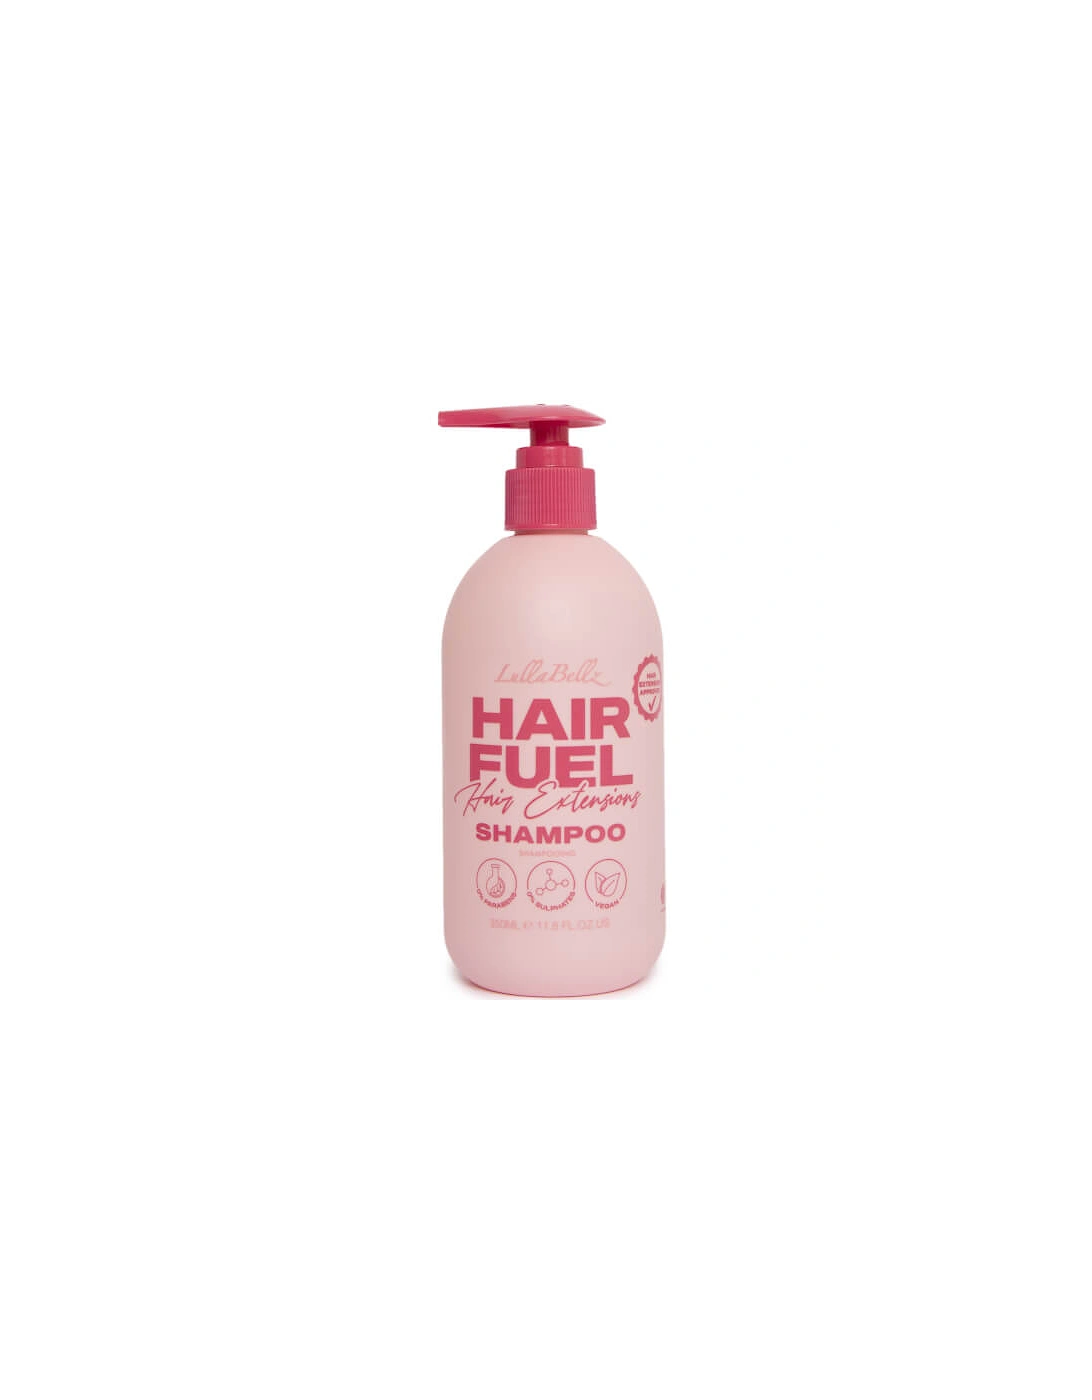 Hair Fuel Hair Extension Shampoo 350ml, 2 of 1